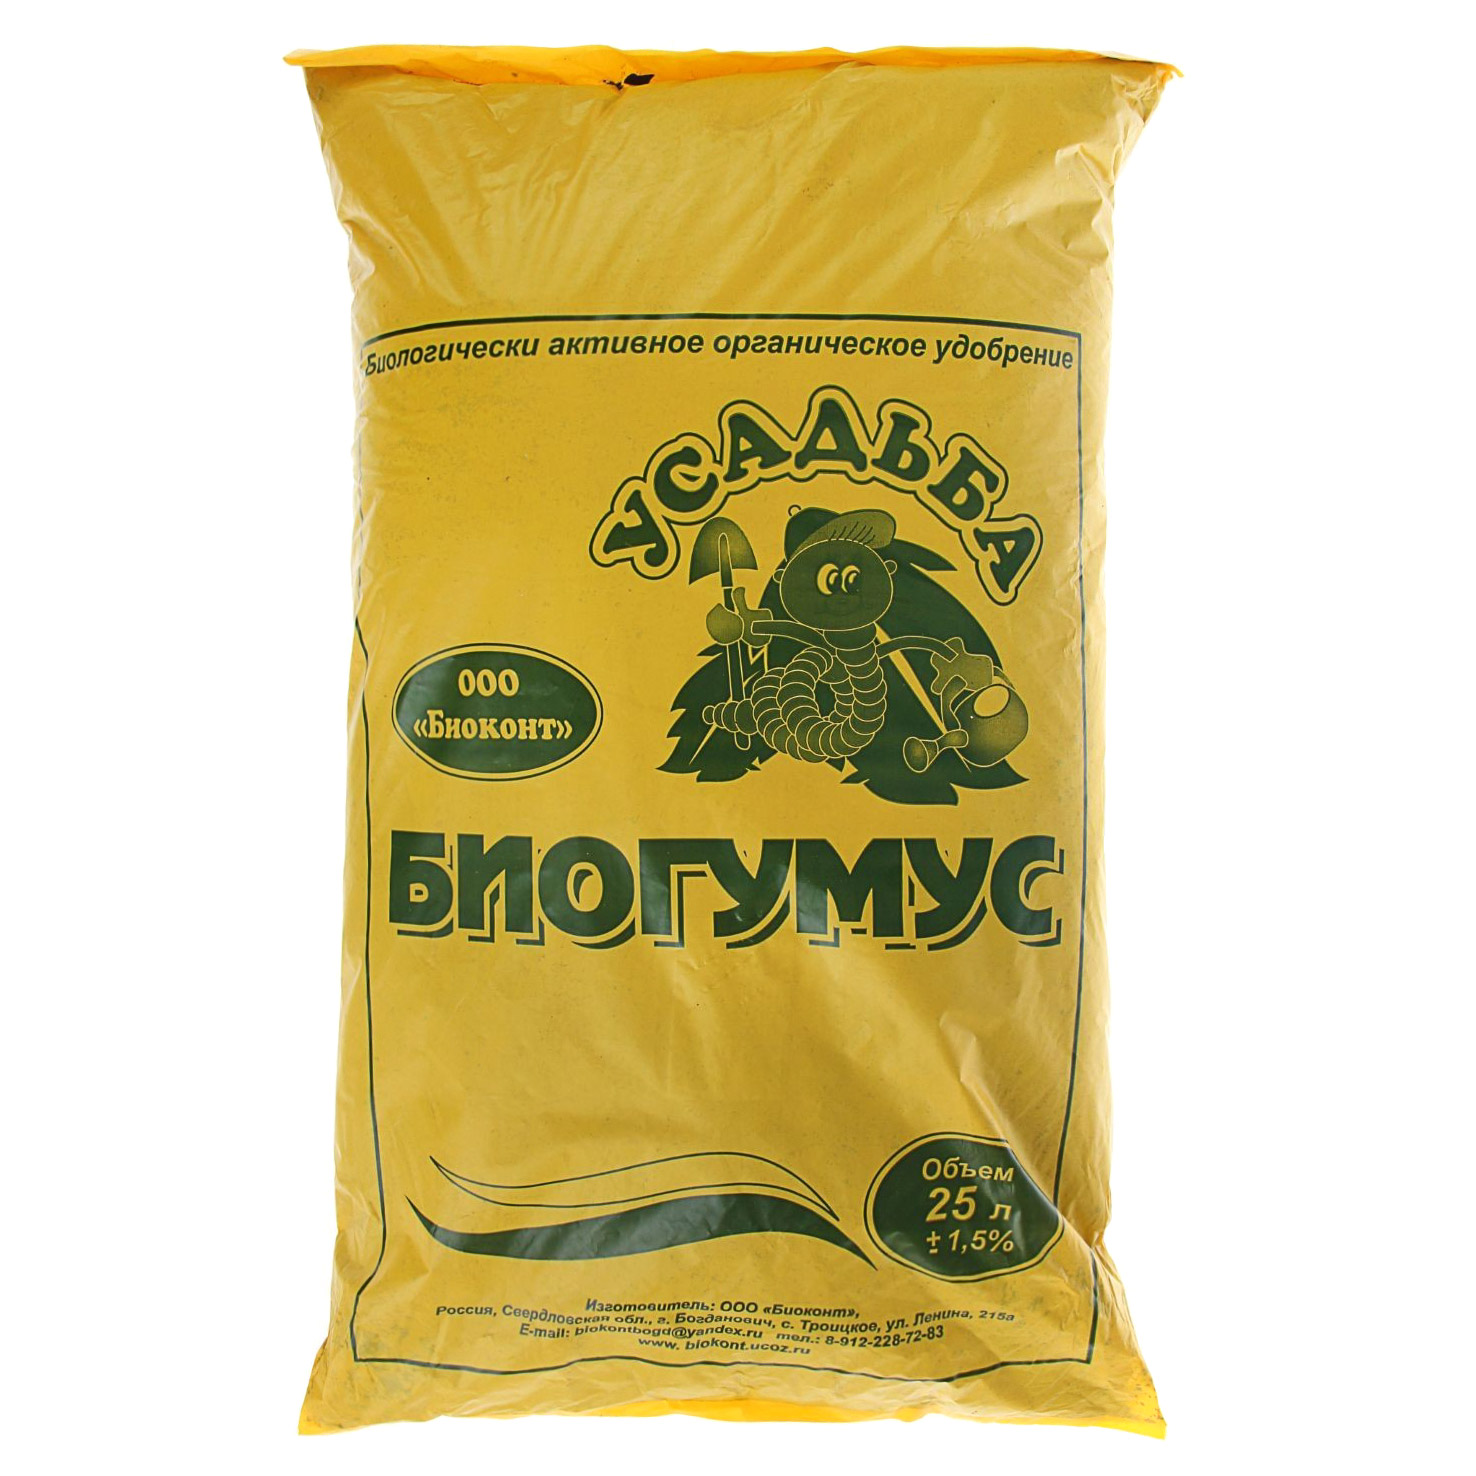 Купить биогумус в москве. Биогумус 25 л.. Гумус удобрение. Биогумус в пакетах. Биогумус сухой.